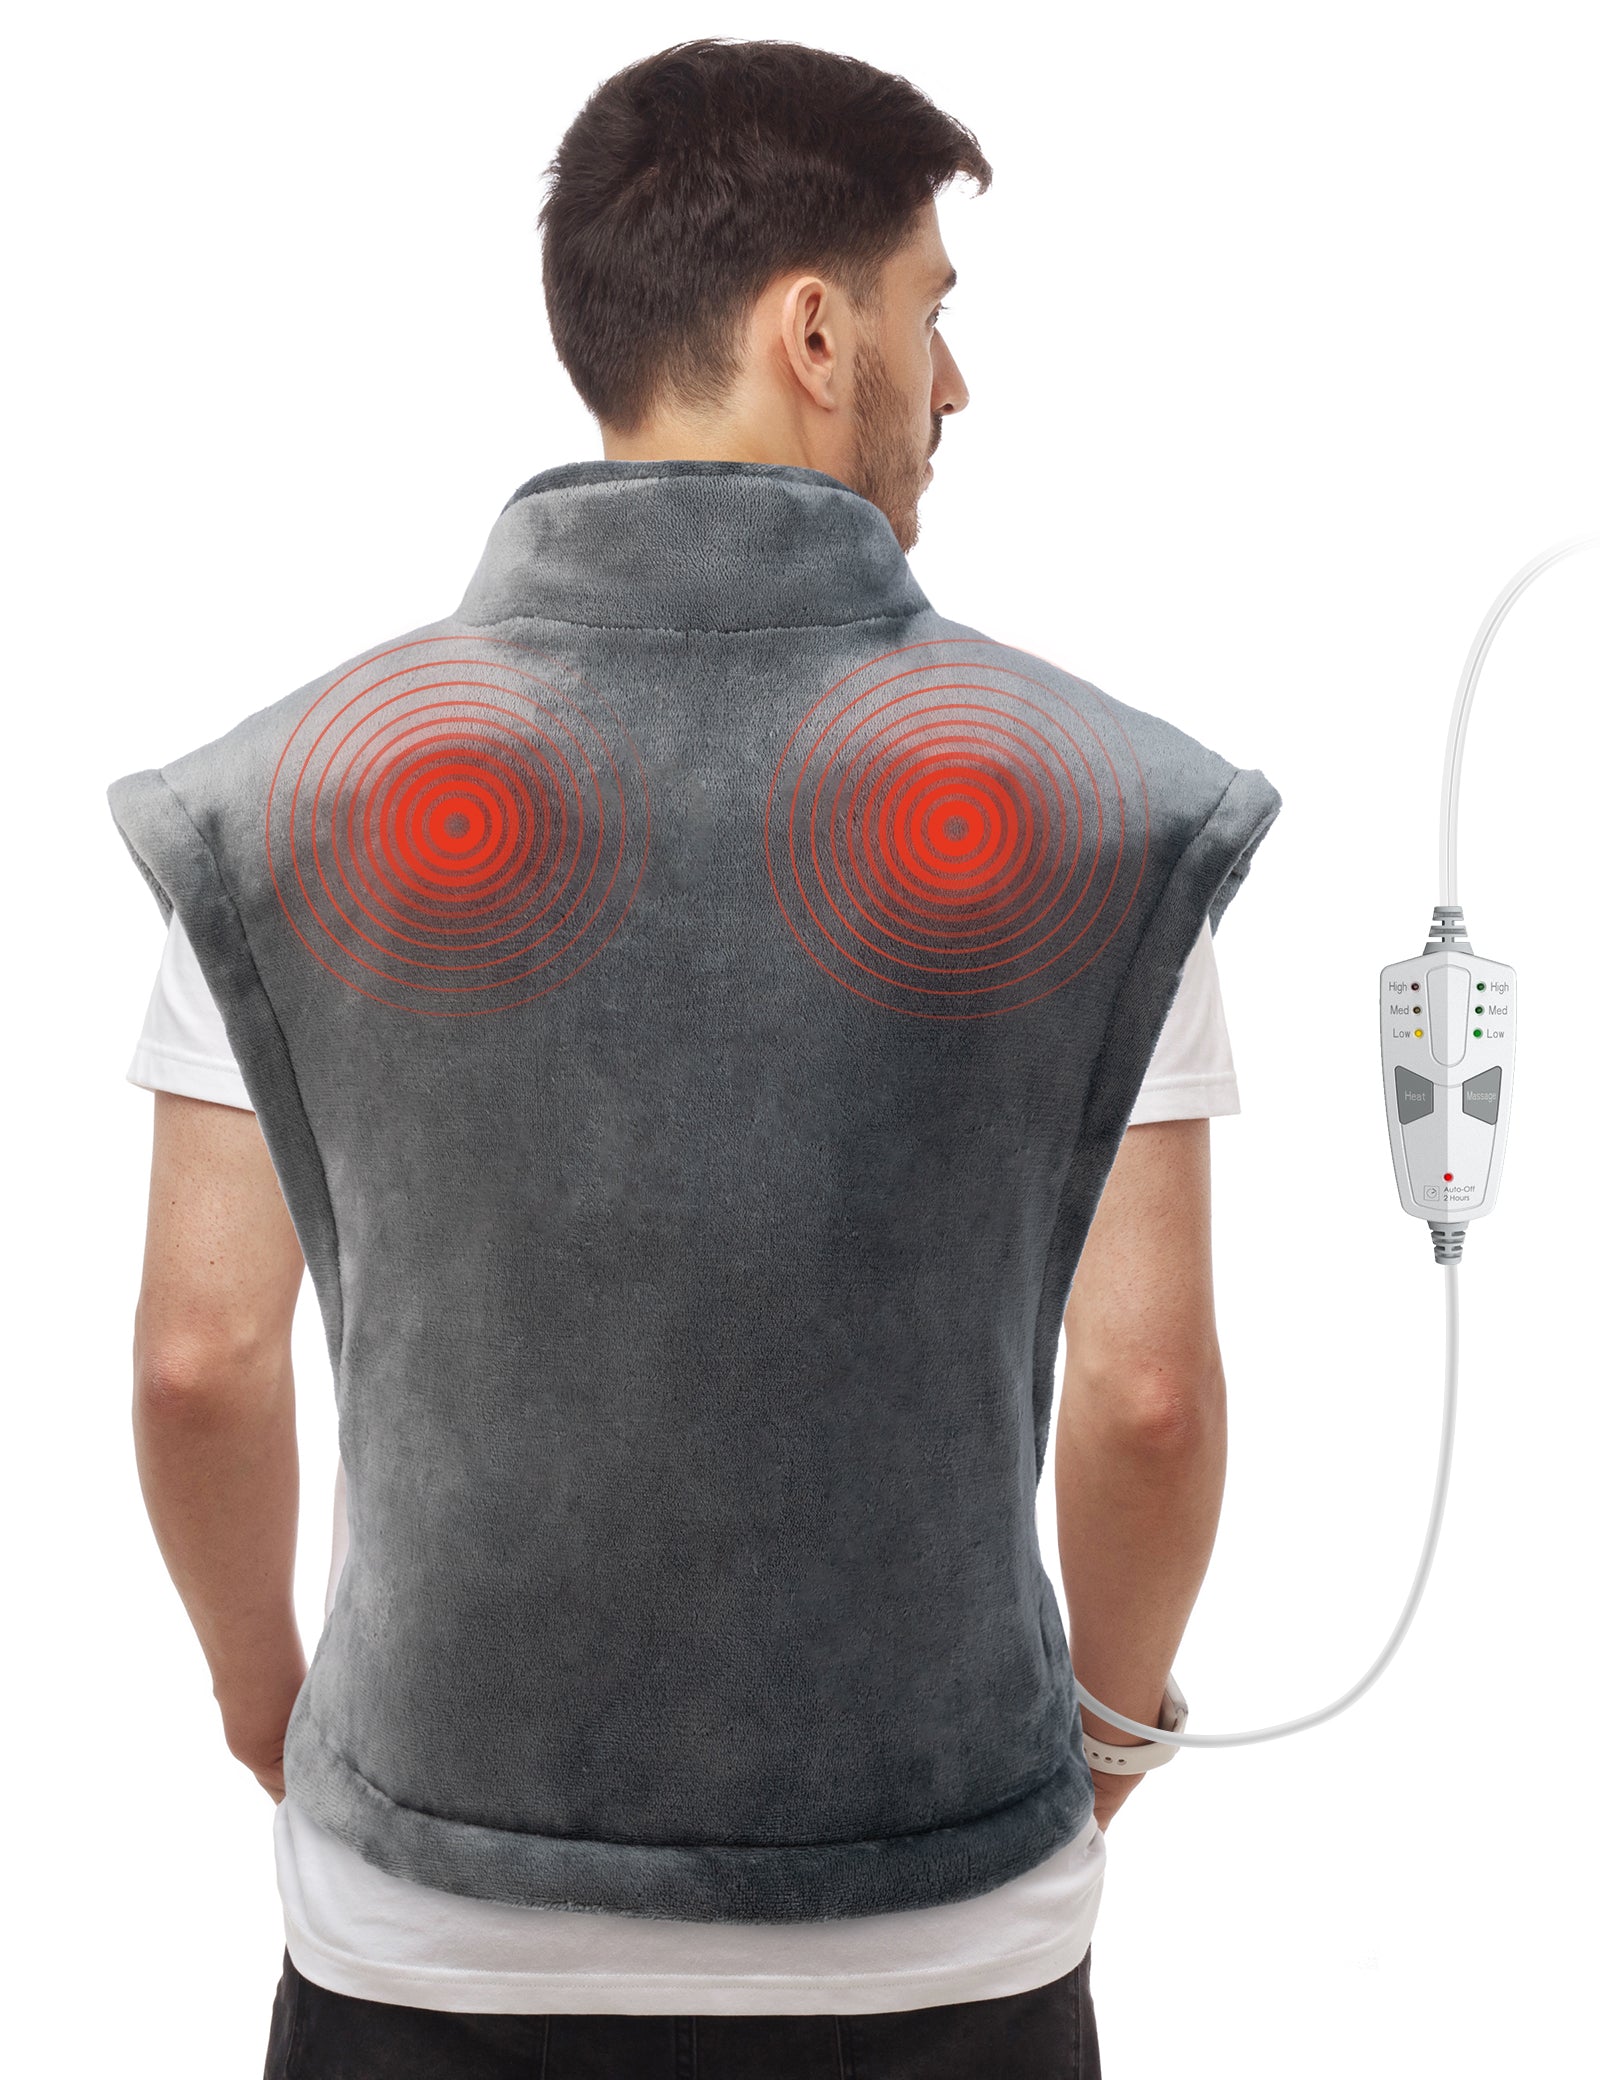 Quality vibrating massage vest Designed For Varied Uses 